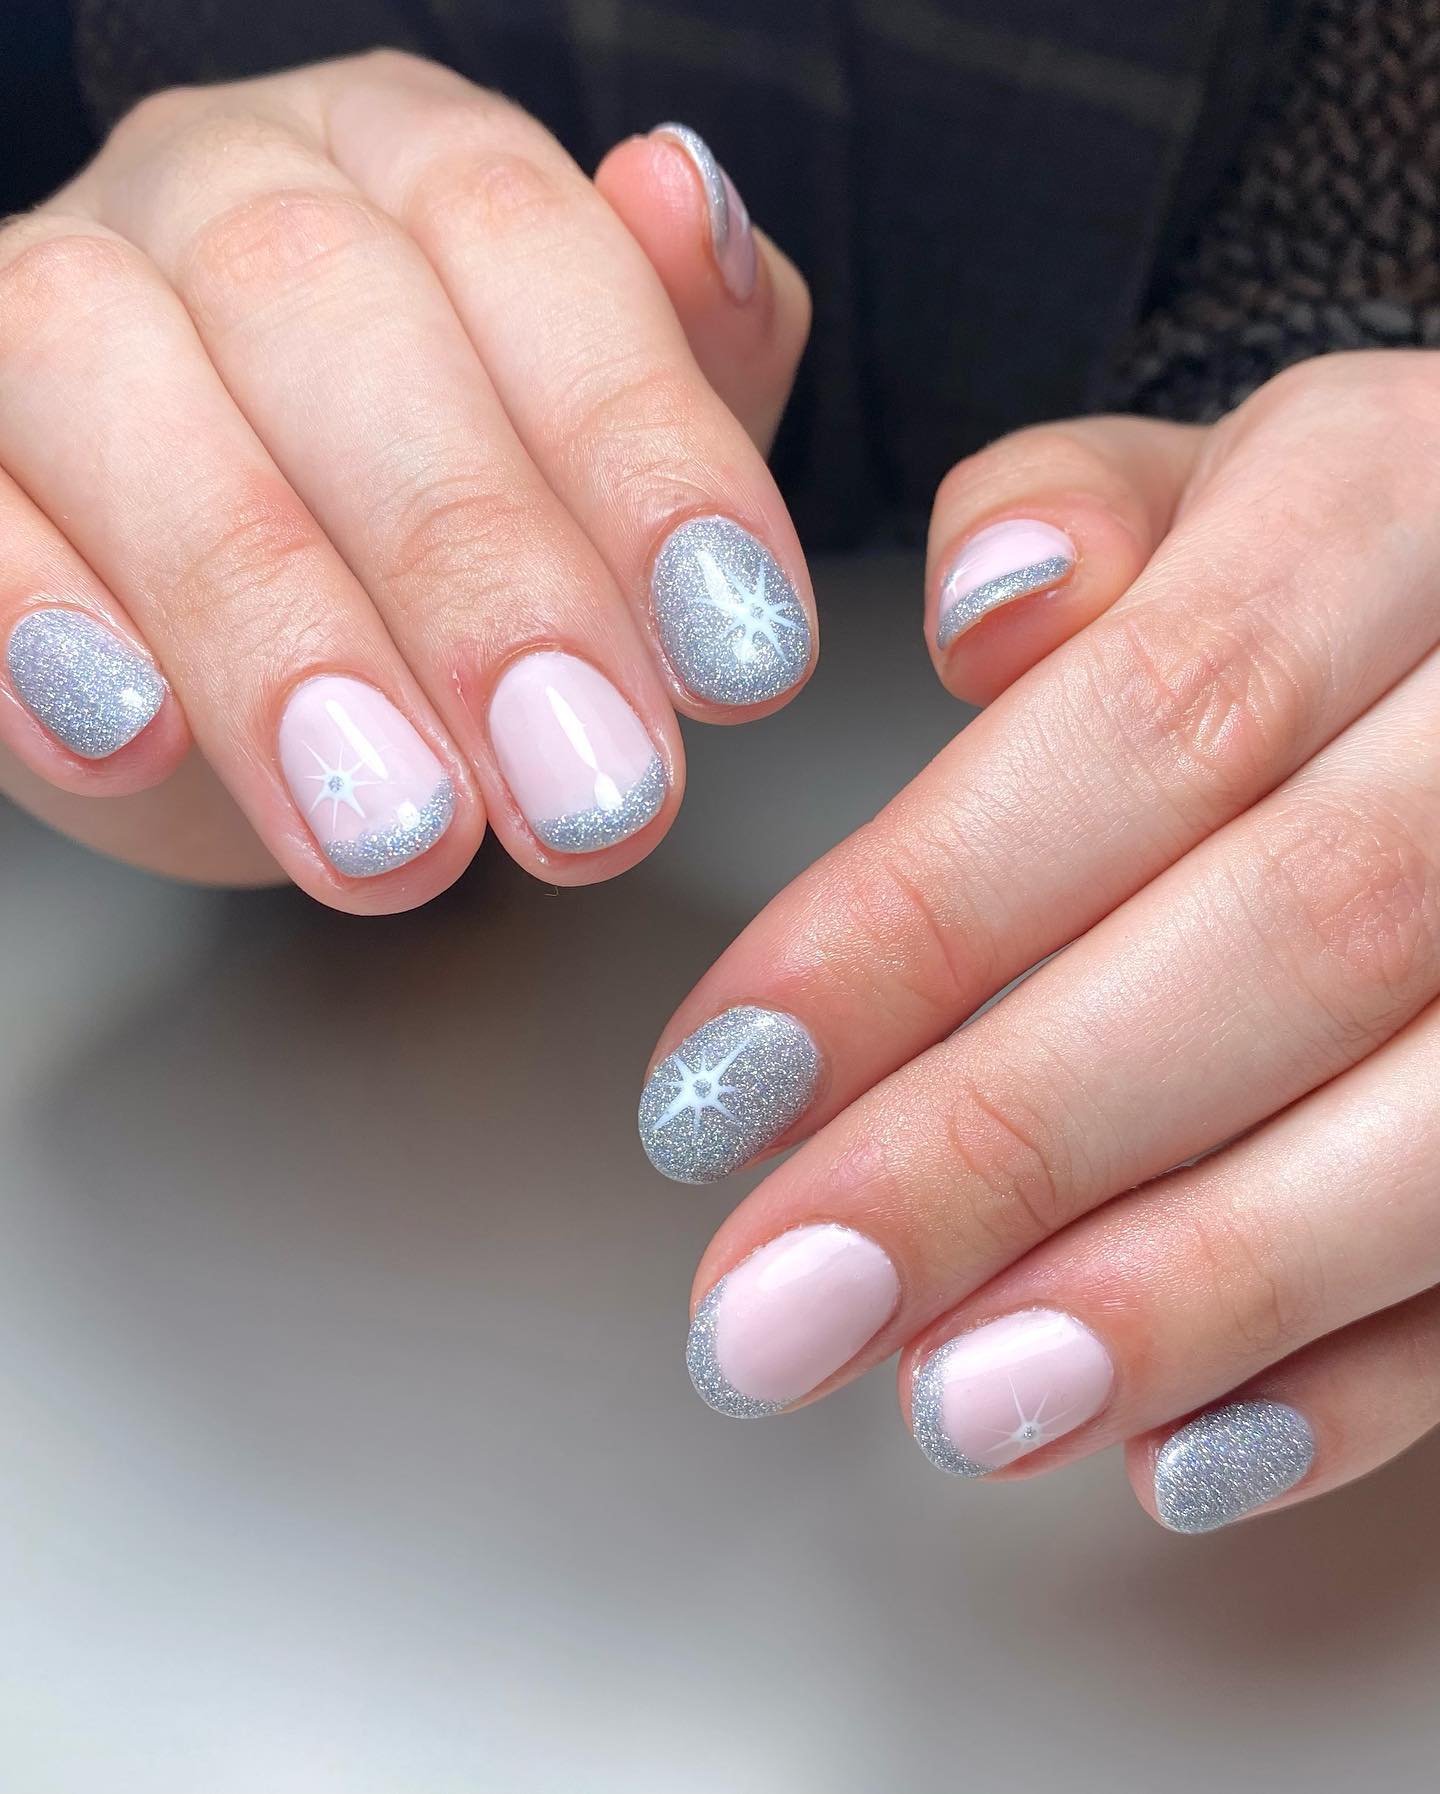 Pink and silver gel toes | Fingernail designs, Gel toes, Gel nails